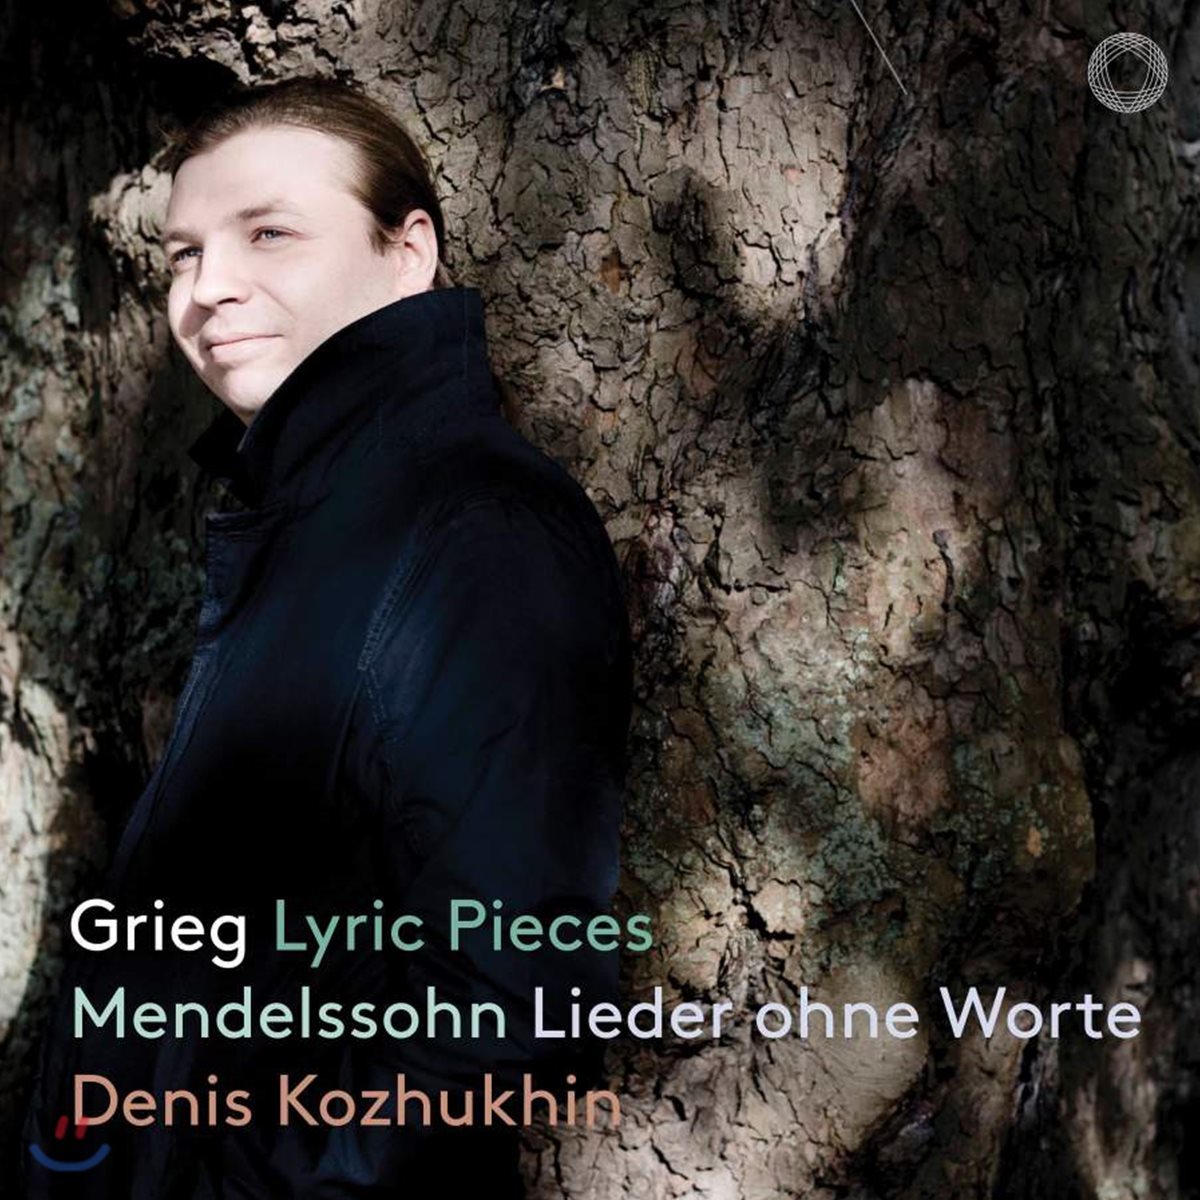 Denis Kozhukhin 그리그: 서정 소품집 / 멘델스존: 무언가 (Grieg: Lyric Pieces / Mendelssohn: Lieder ohne Worte)